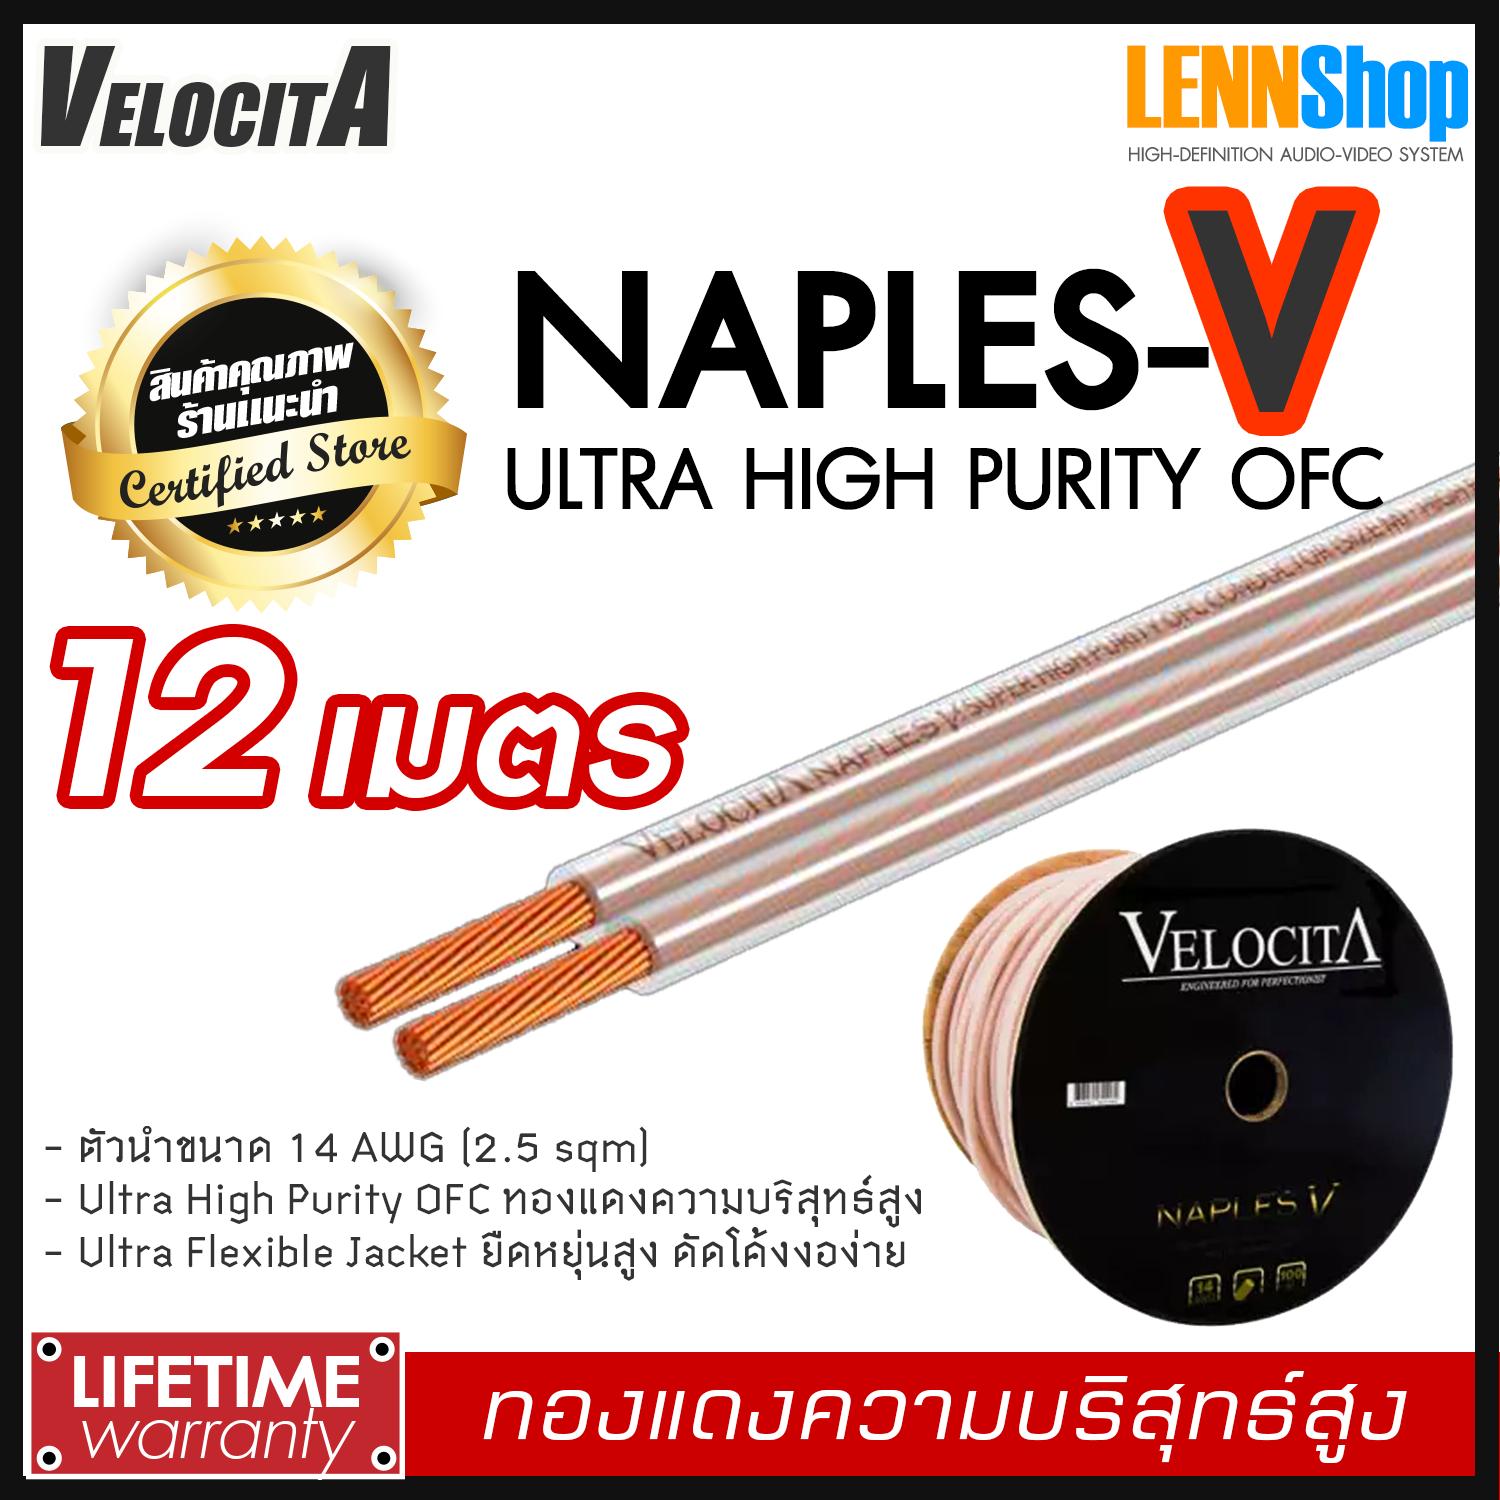 VELOCITA : NAPLES V สายลำโพง Ultra High Purity OFC ความบริสุทธ์สูง ความยาว ตั้งแต่ 1 - 100 เมตร เลือกได้หลายขนาด สินค้าของแท้ 100% จากตัวแทนจำหน่ายอย่างเป็นทางการ จำหน่ายโดย LENNSHOP / Velocita Naple V / naple V